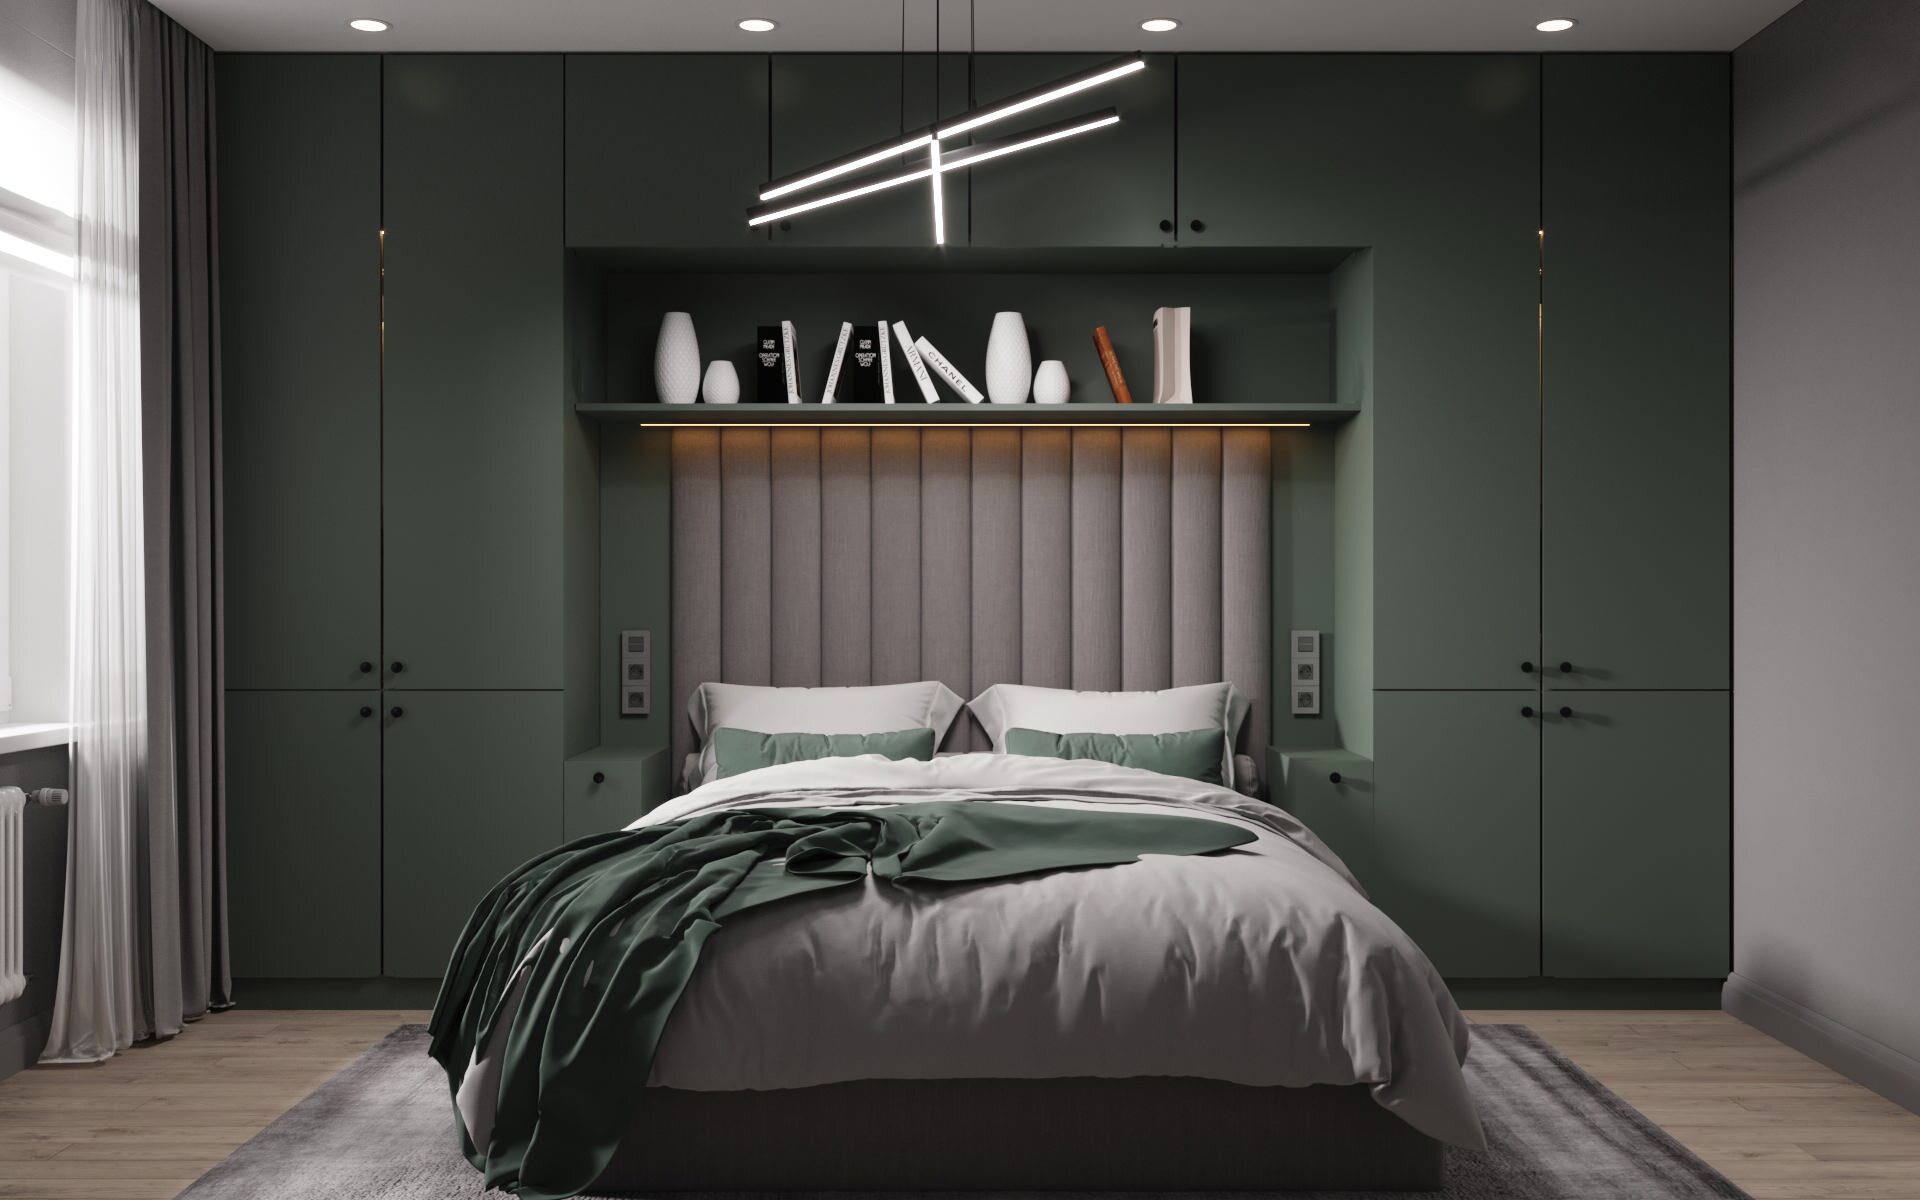 Интерьер спальни cветовыми линиями, рейками с подсветкой, подсветкой настенной, подсветкой светодиодной и светильниками над кроватью в современном стиле